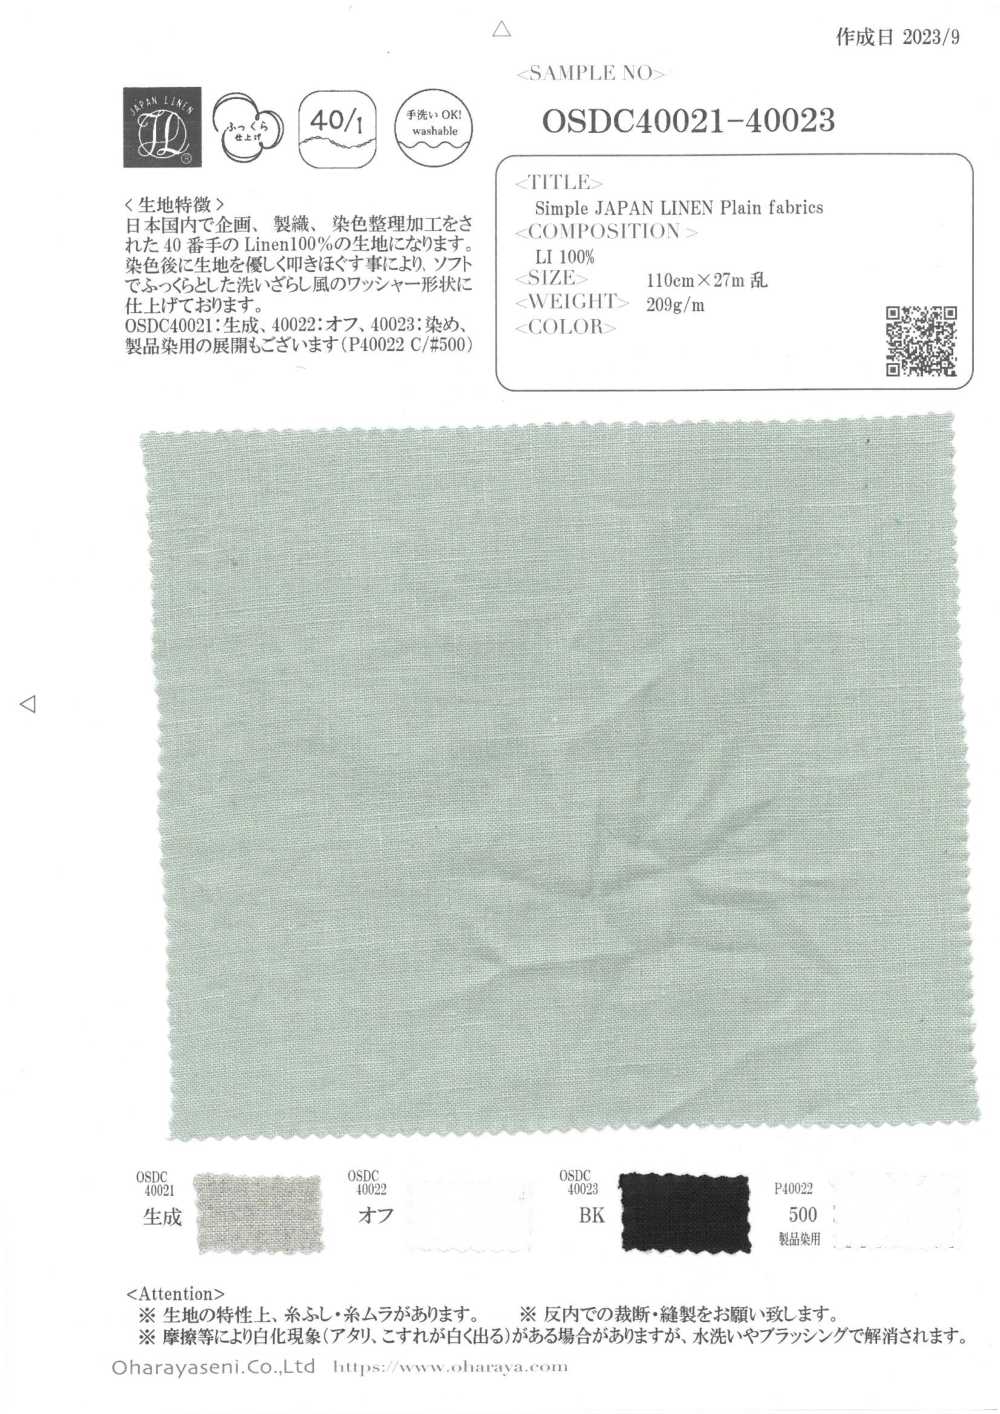 OSDC40022 Simple JAPAN LINEN Plain fabrics (オフ)[生地] 小原屋繊維